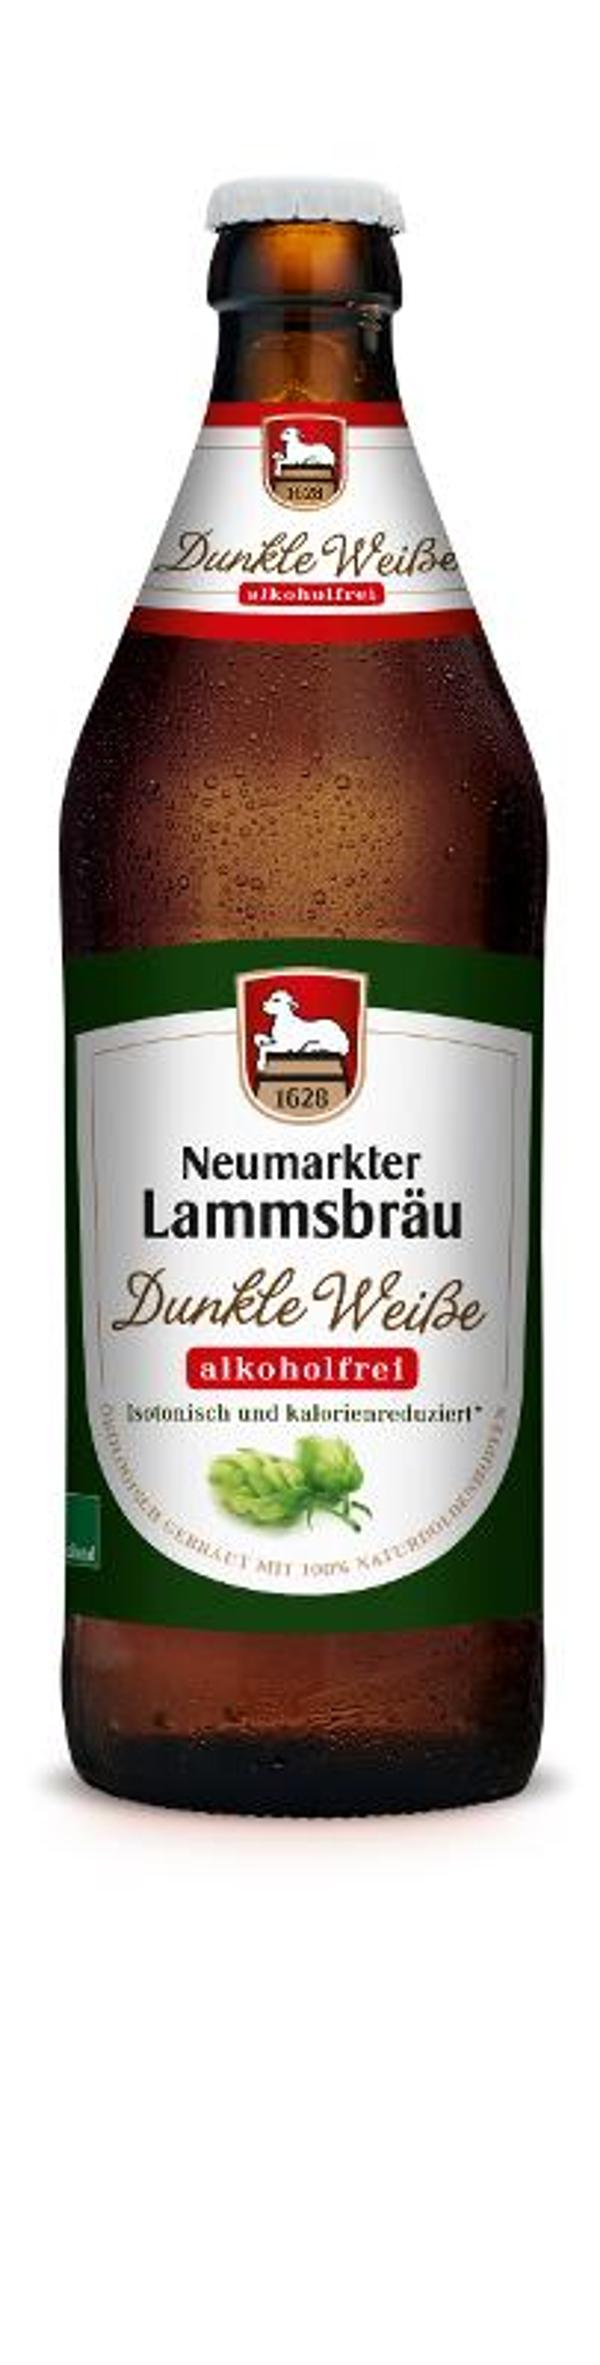 Produktfoto zu Lammsbräu Dunkle Weiße alkoholfrei - 0,5l